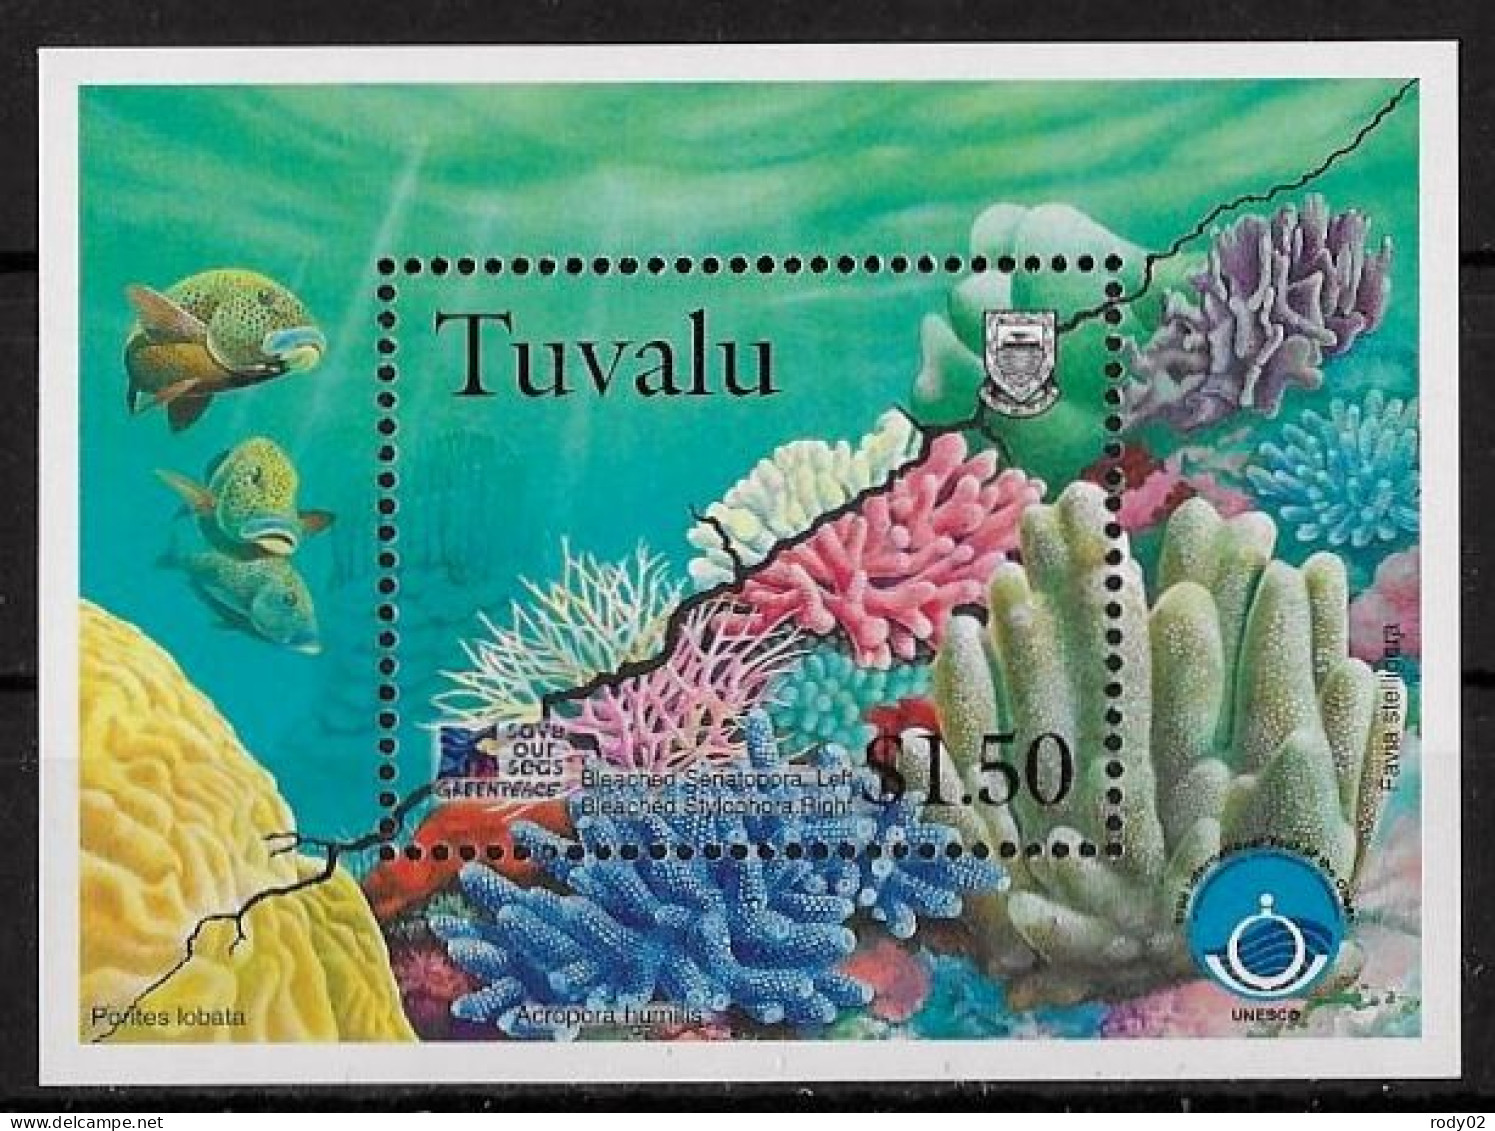 TUVALU - FAUNE AQUATIQUE - N° 400 A 403 ET BF 64 - NEUF** MNH - Mundo Aquatico